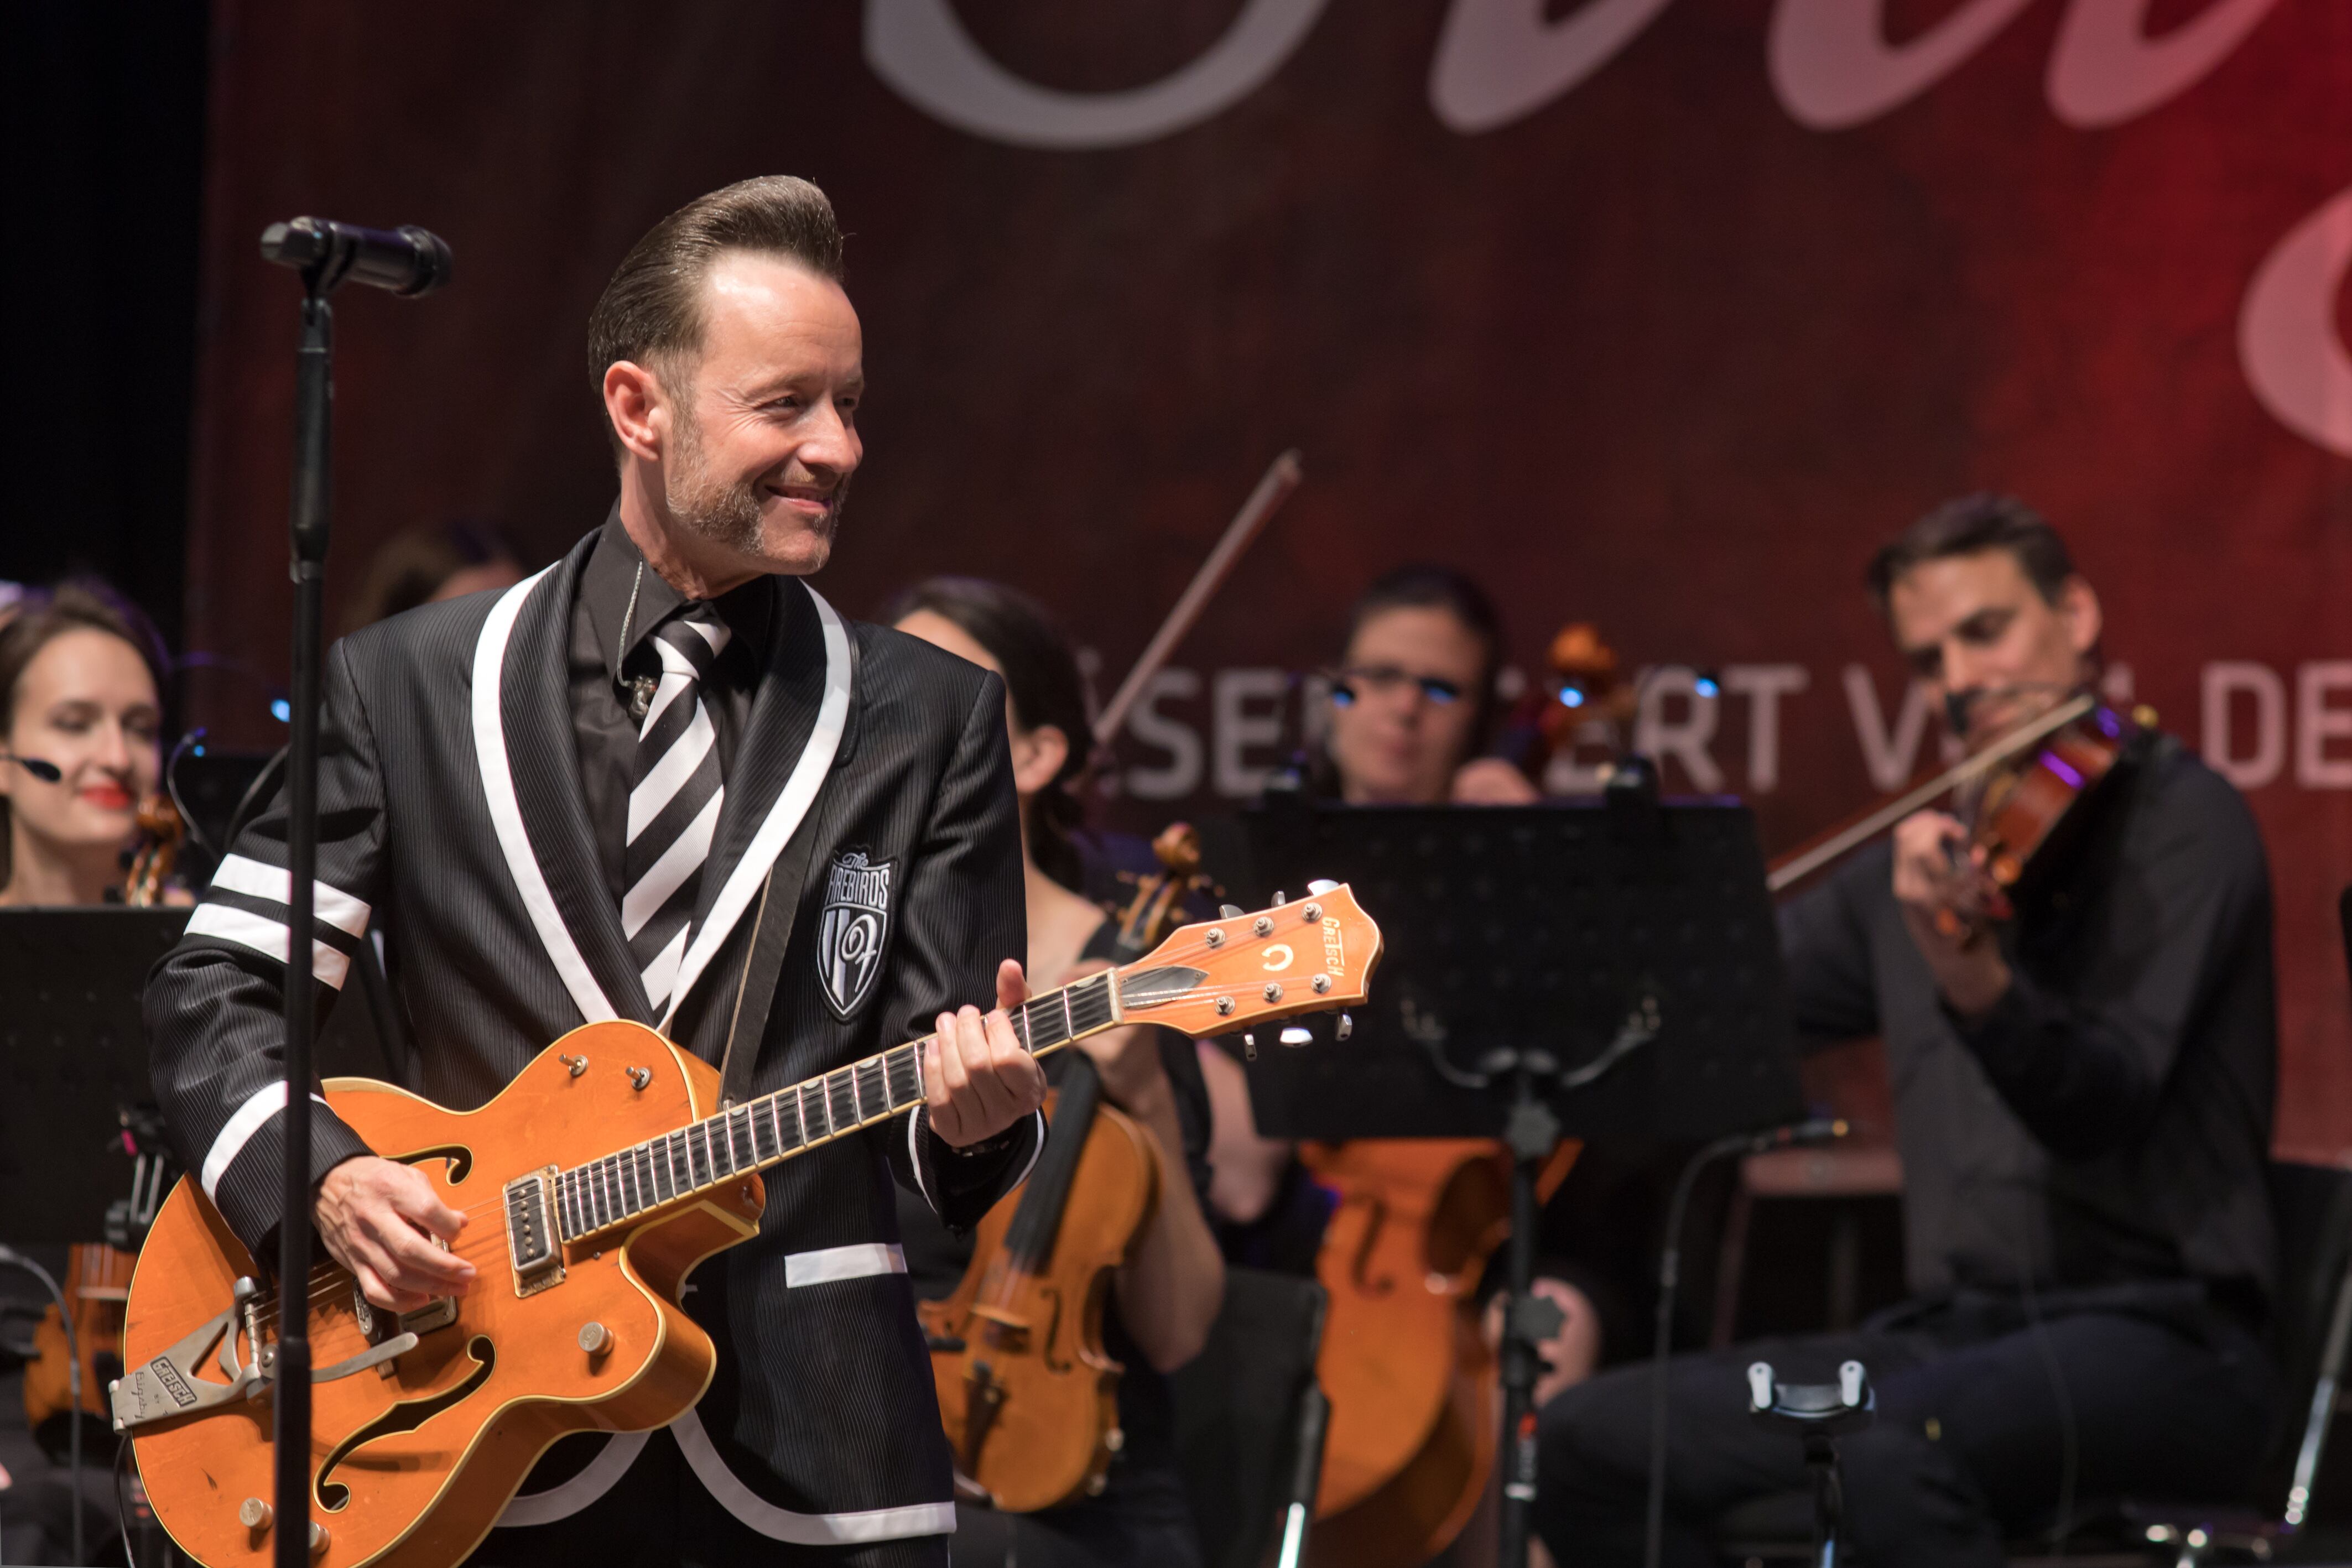 Violines, violonchelos y guitarras eléctricas en el concierto de The Firebirds Rockestra en la Marktplatz de Leipzig el sábado por la noche.